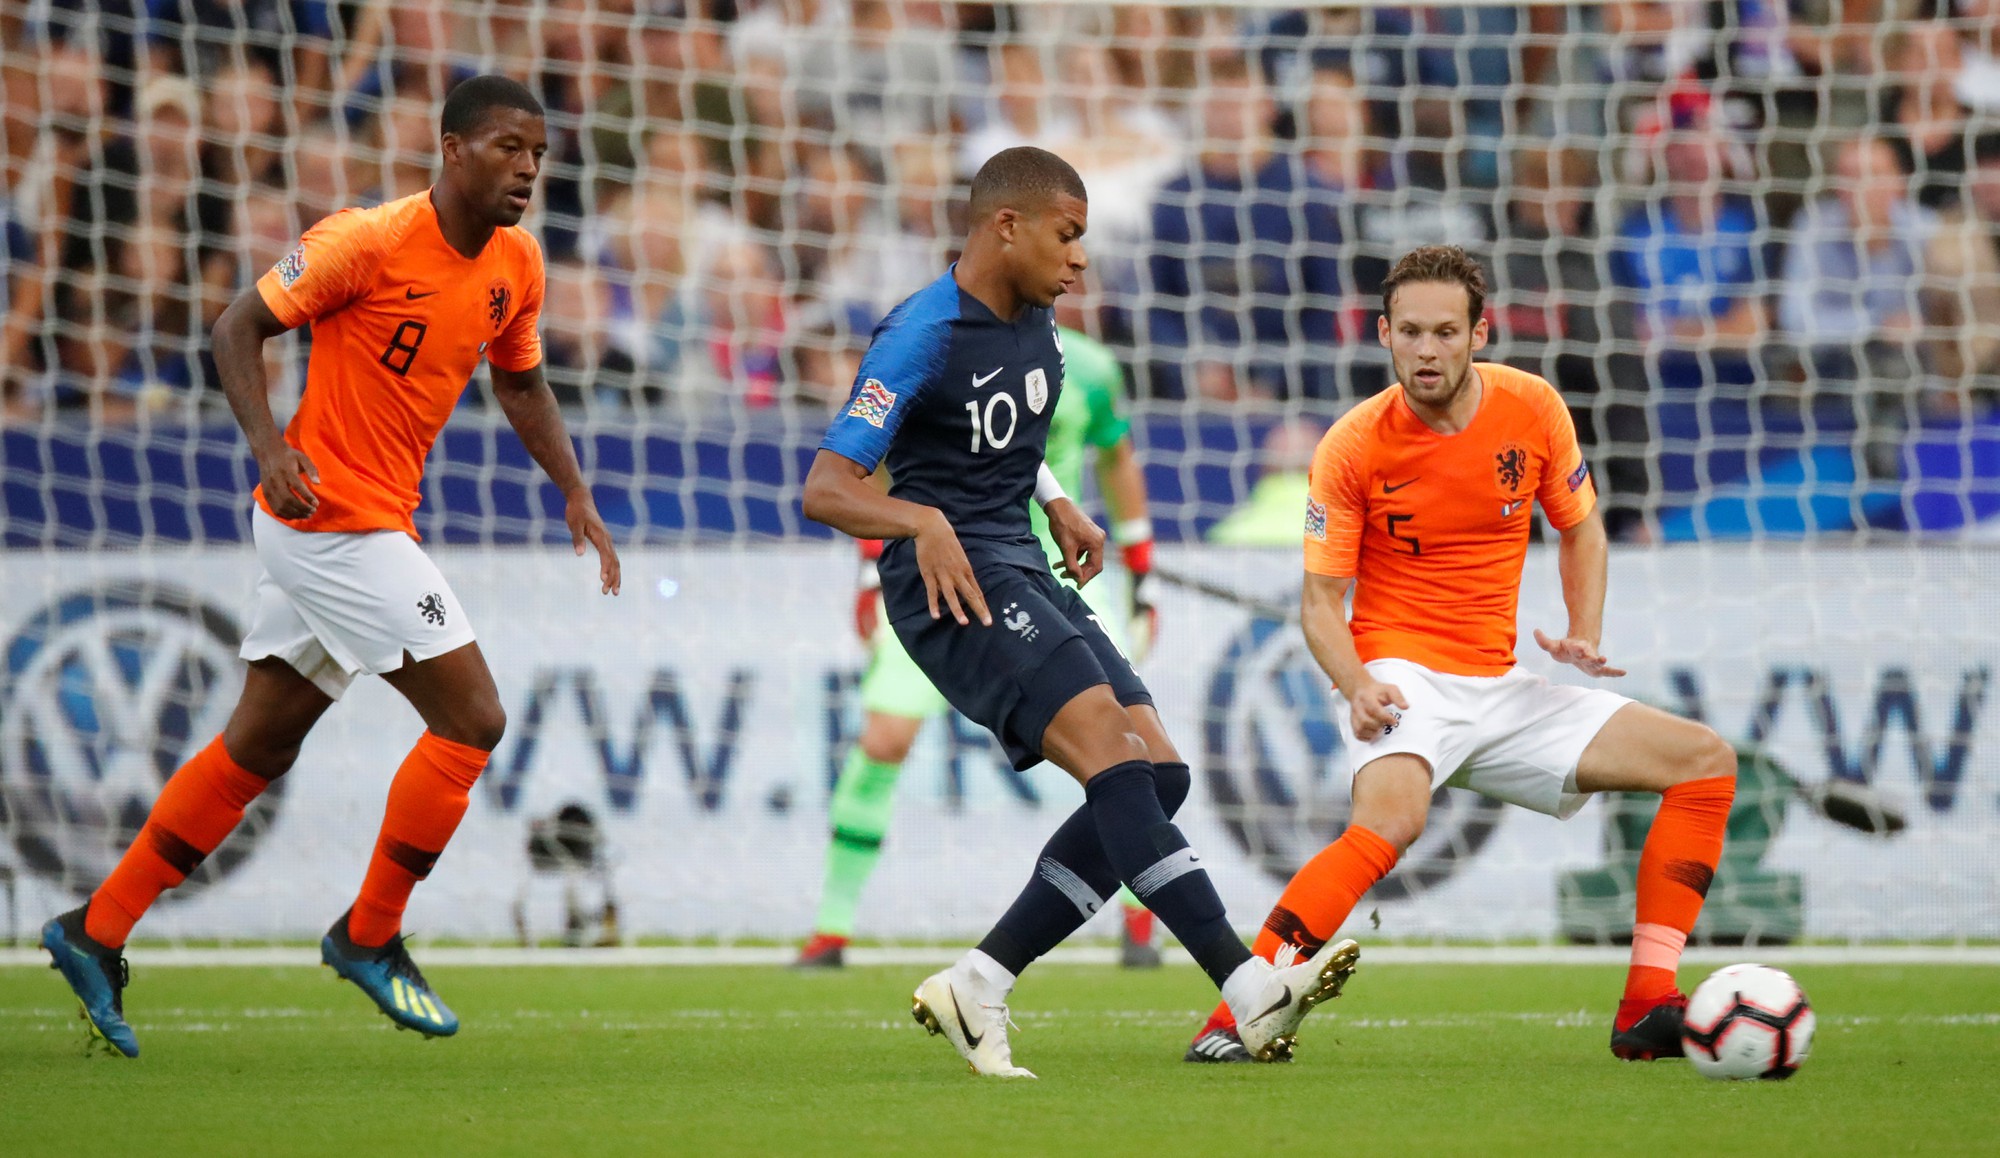 Pháp vs Hà Lan (2h45 ngày 25/3): Mbappe ghi dấu ấn - Ảnh 2.